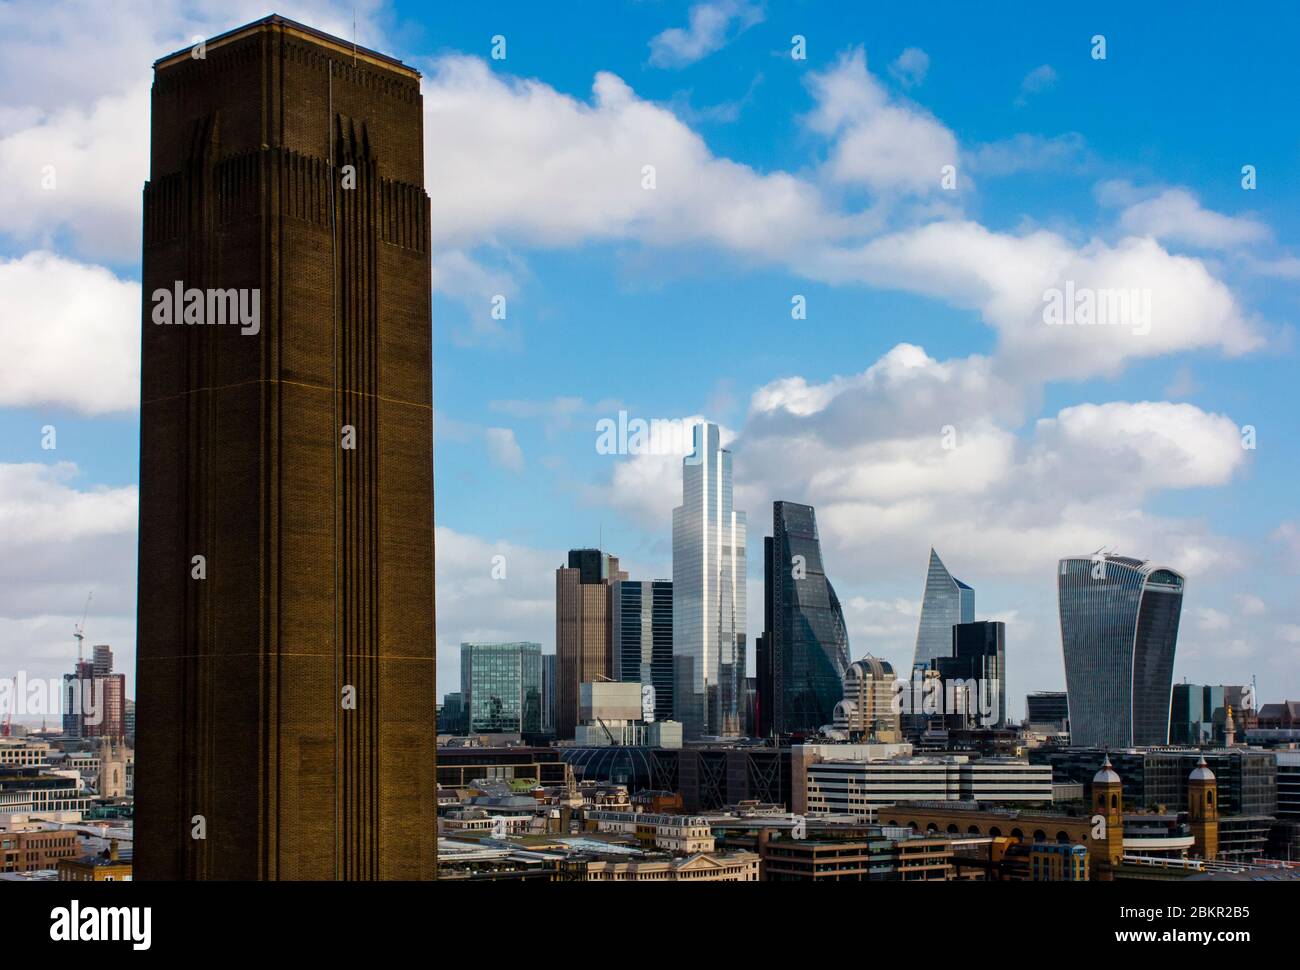 Vista dello skyline del quartiere finanziario della City of London con il blocco di camino della Tate Modern Art Gallery in primo piano. Foto Stock